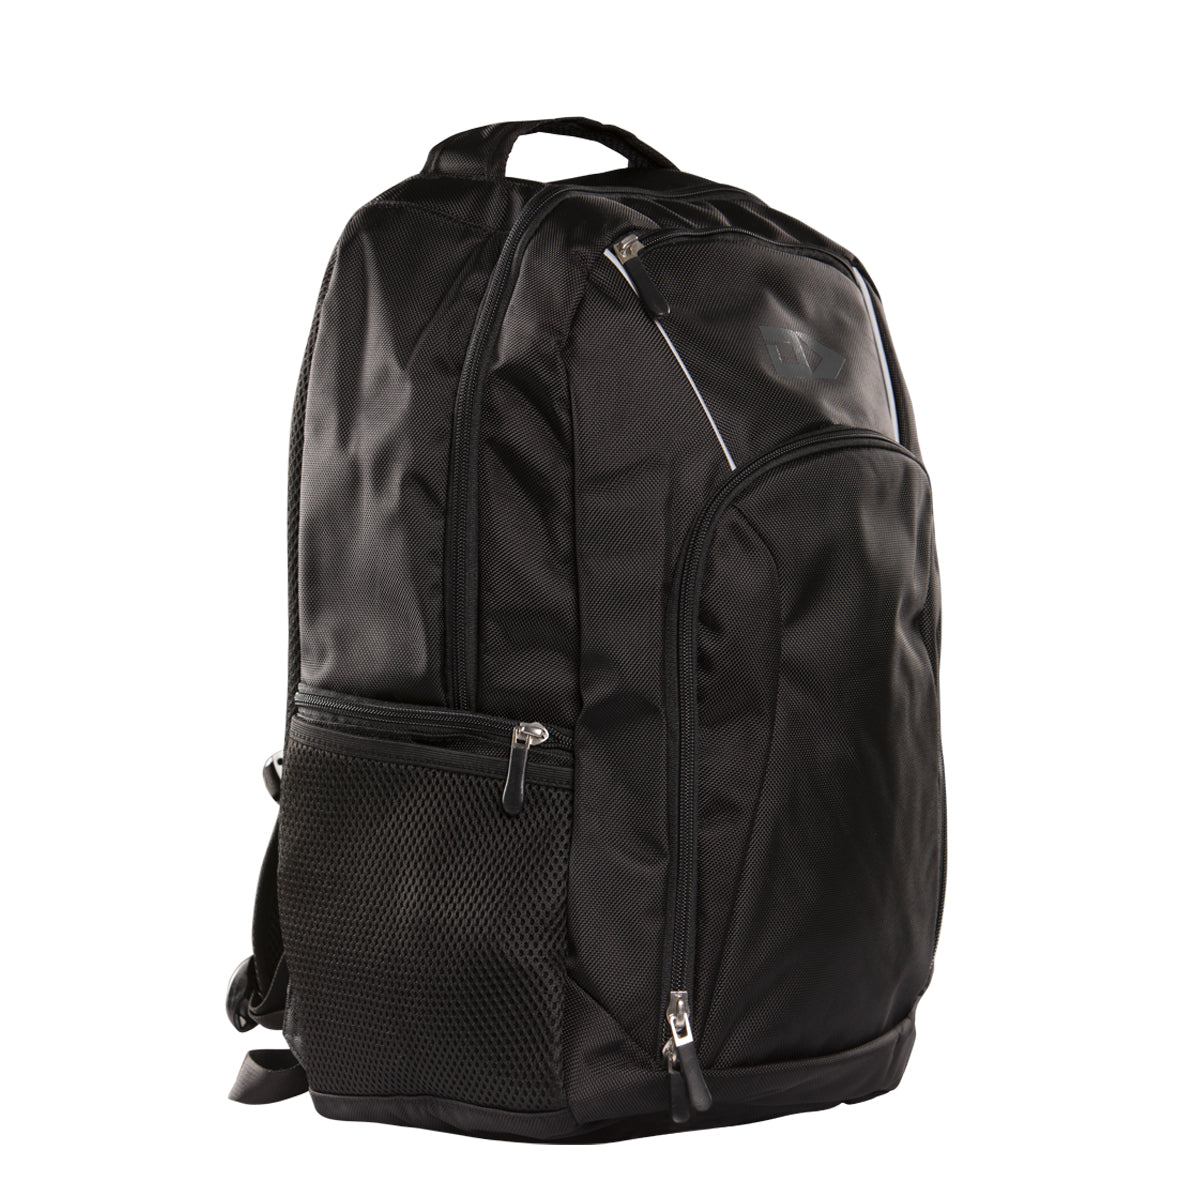 DS Black Backpack